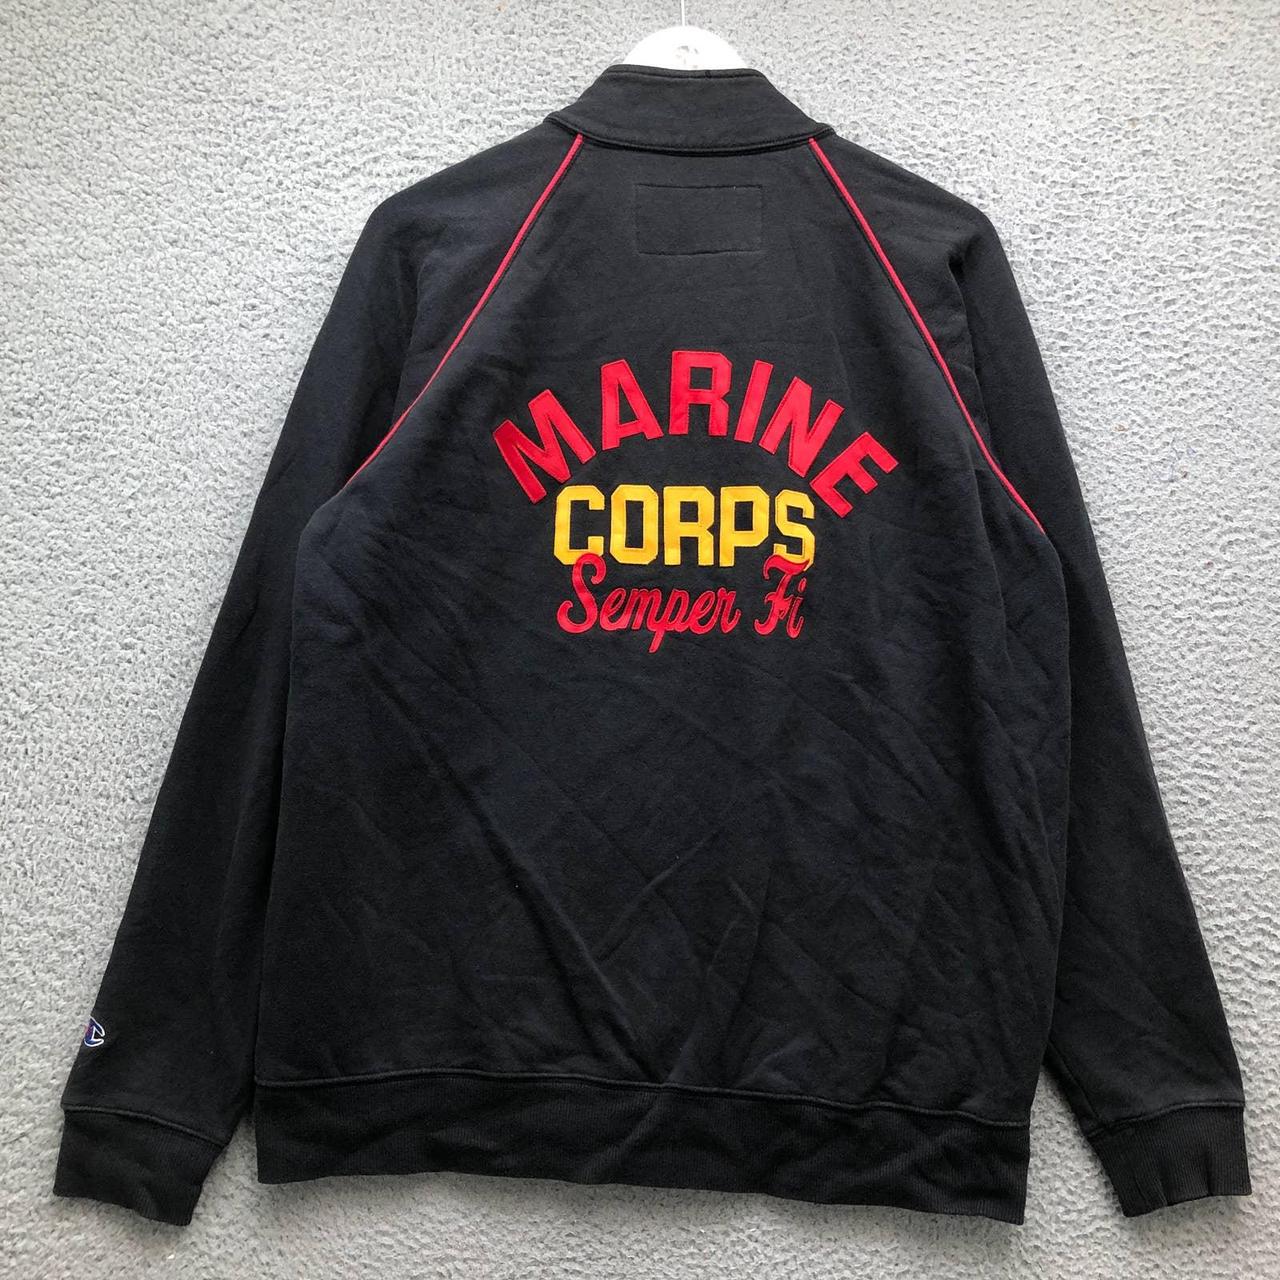 Vintage Champion Depop Marine States - Corps... USMC United